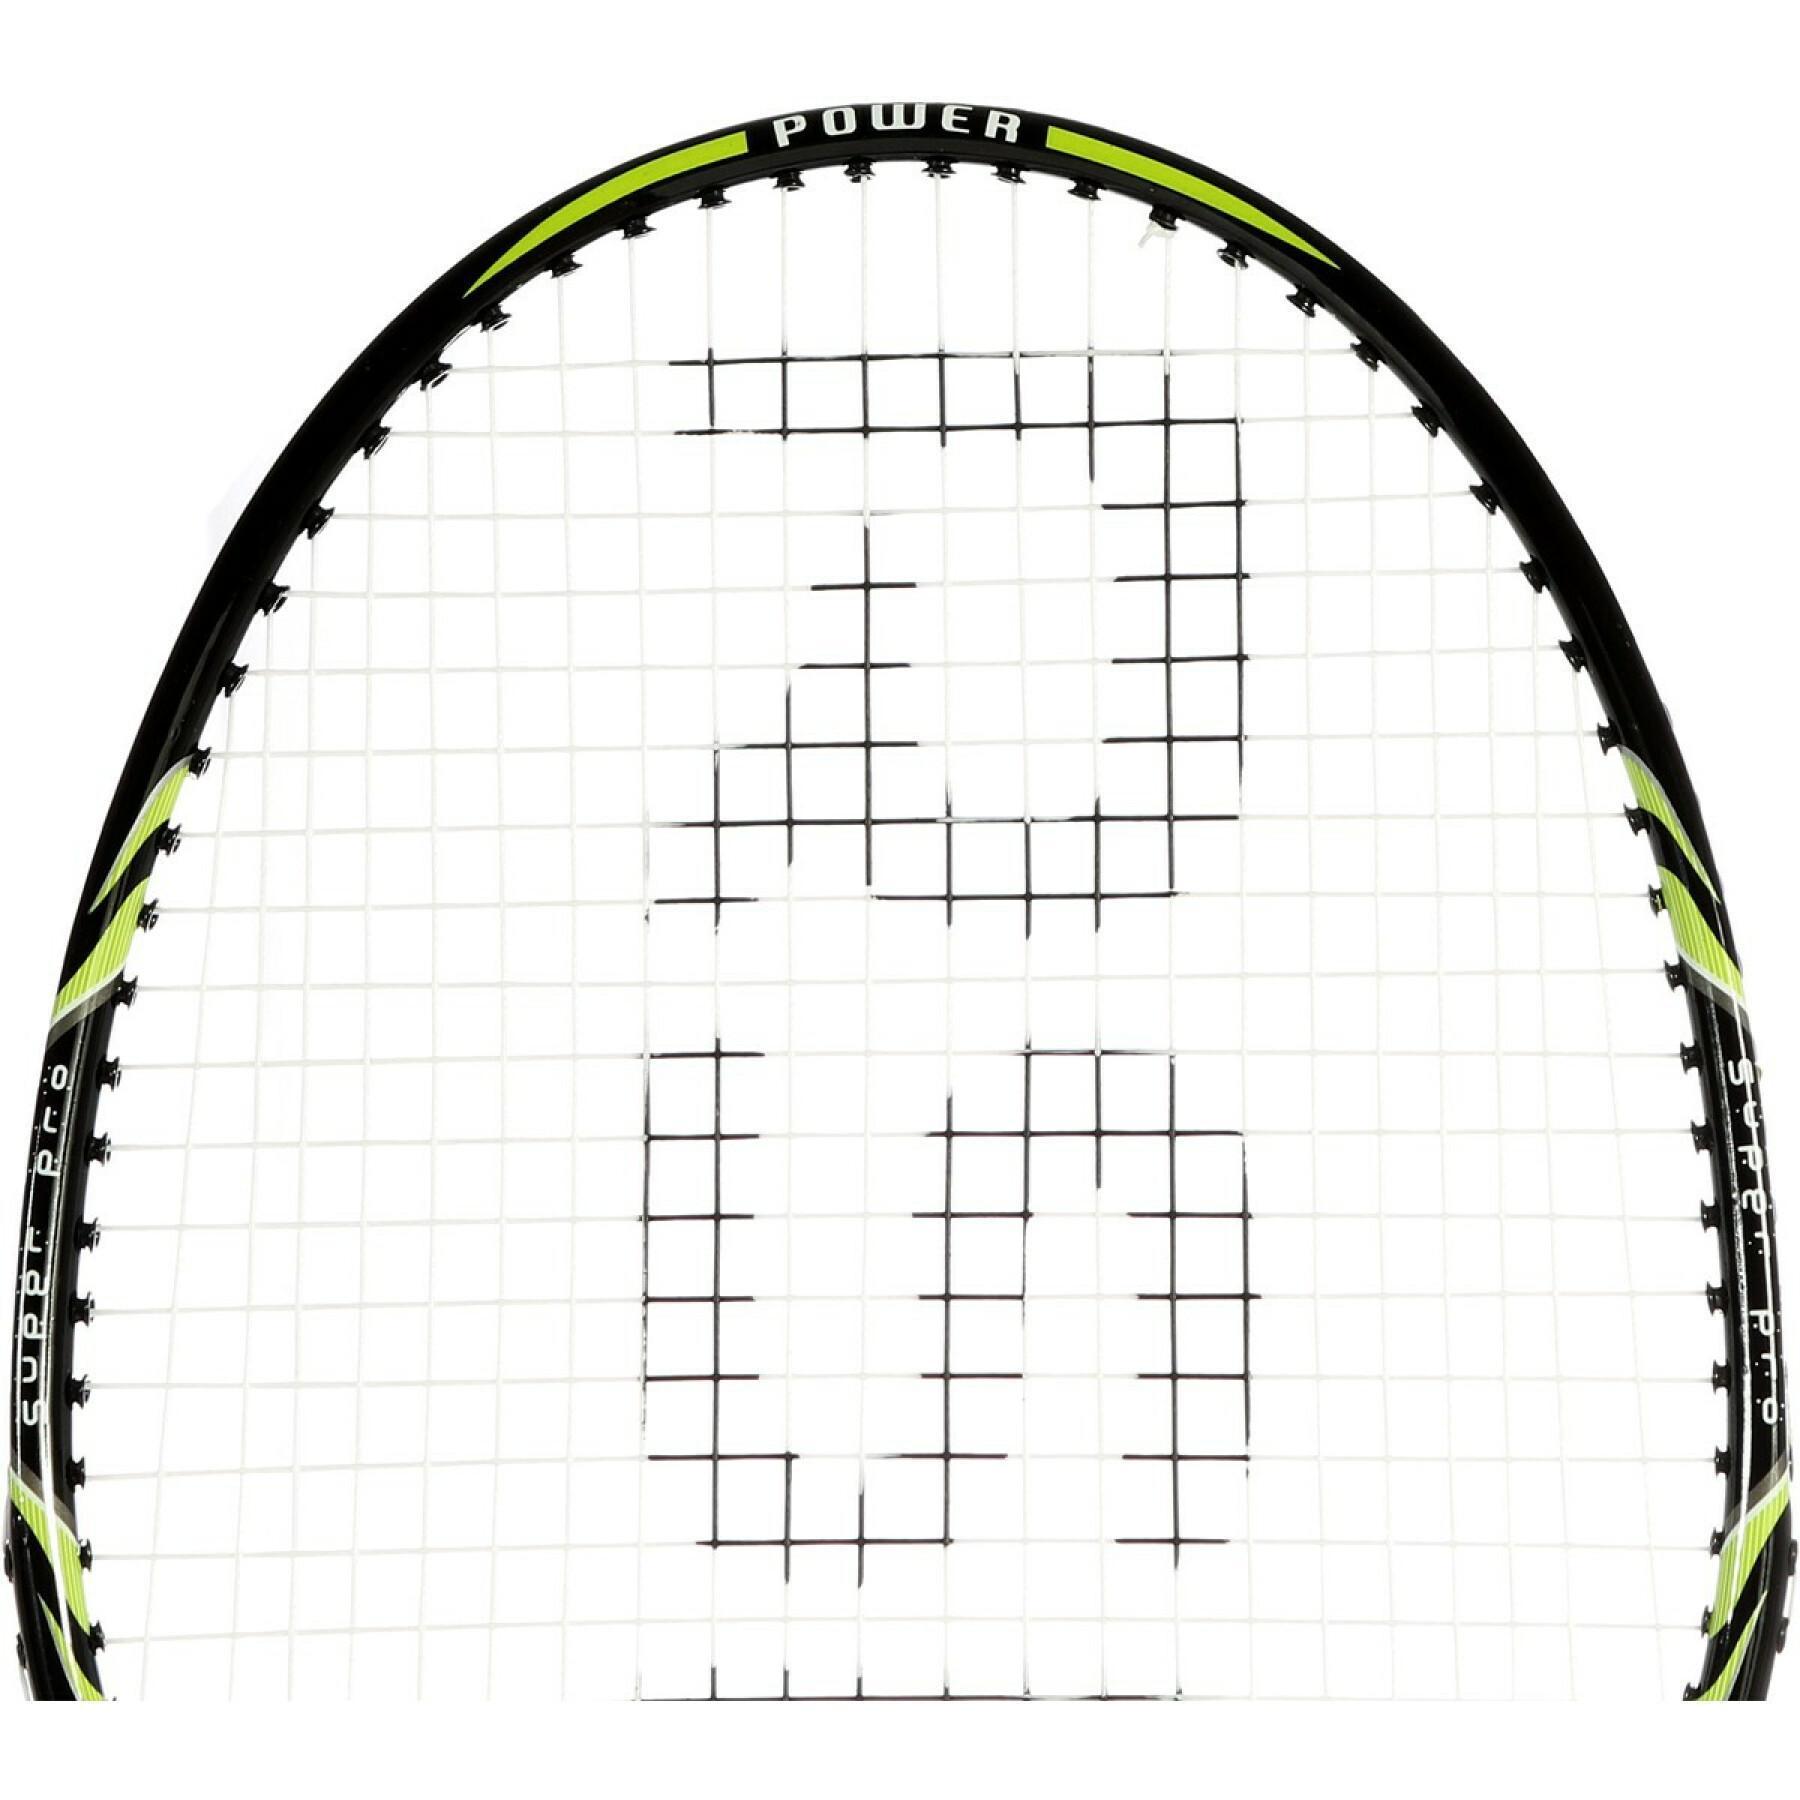 Badmintonschläger RSL Pro